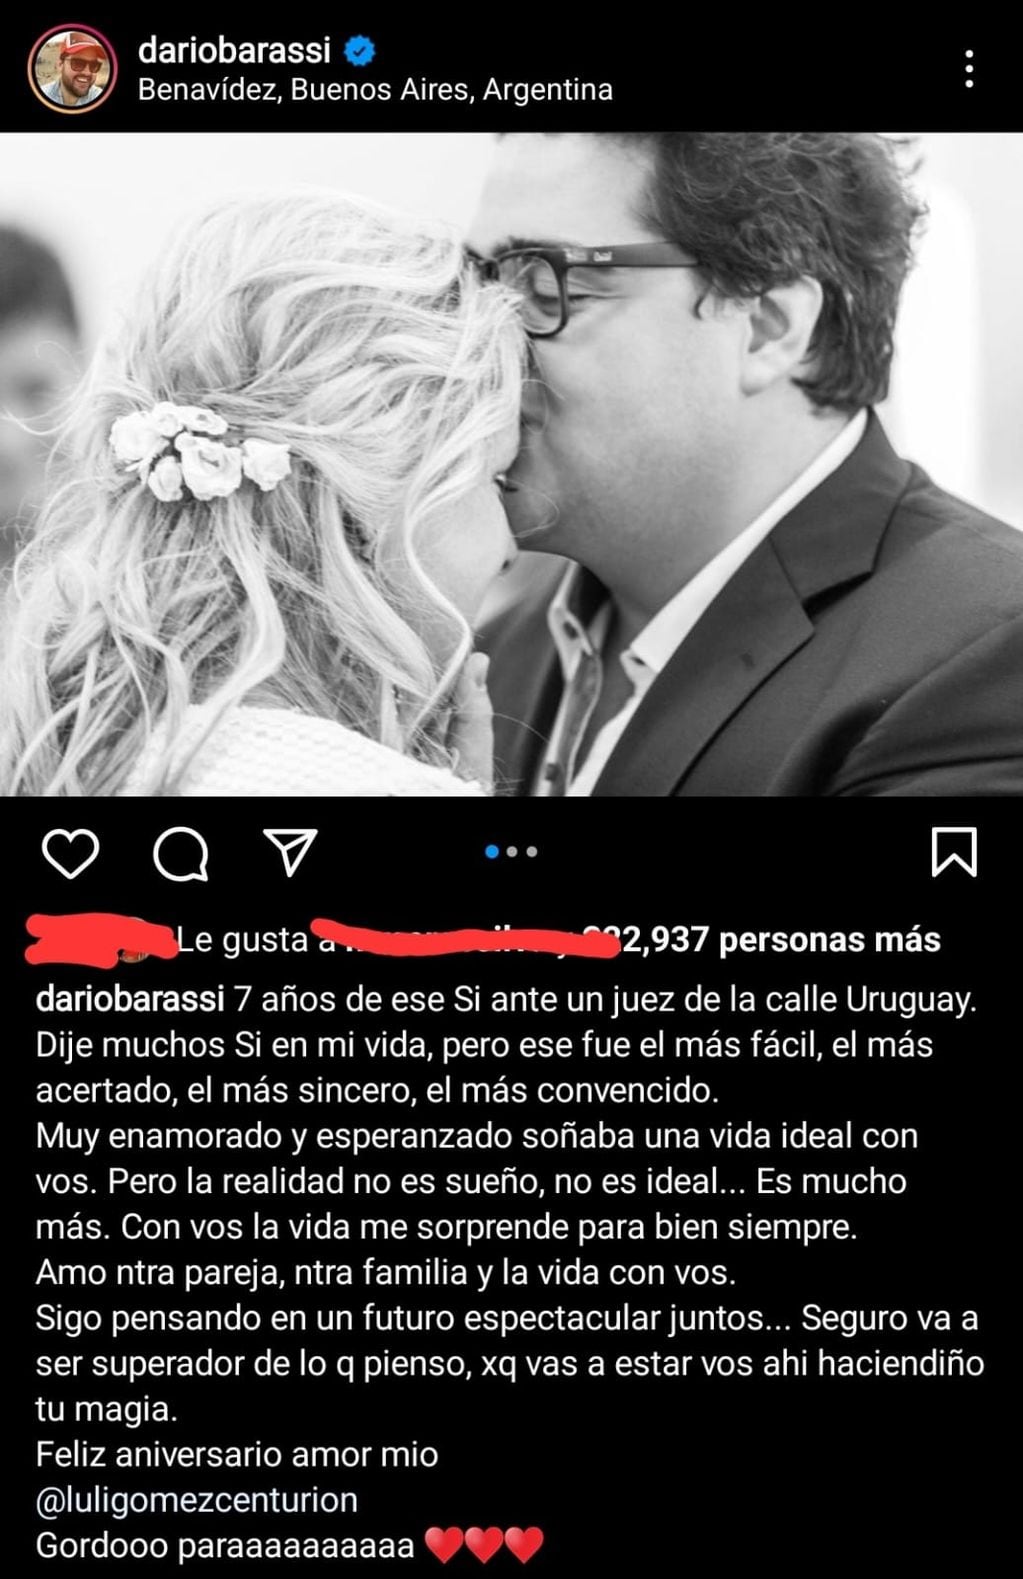 La publicación de Darío Barassi en Instagram con motivo del aniversario de su boda.